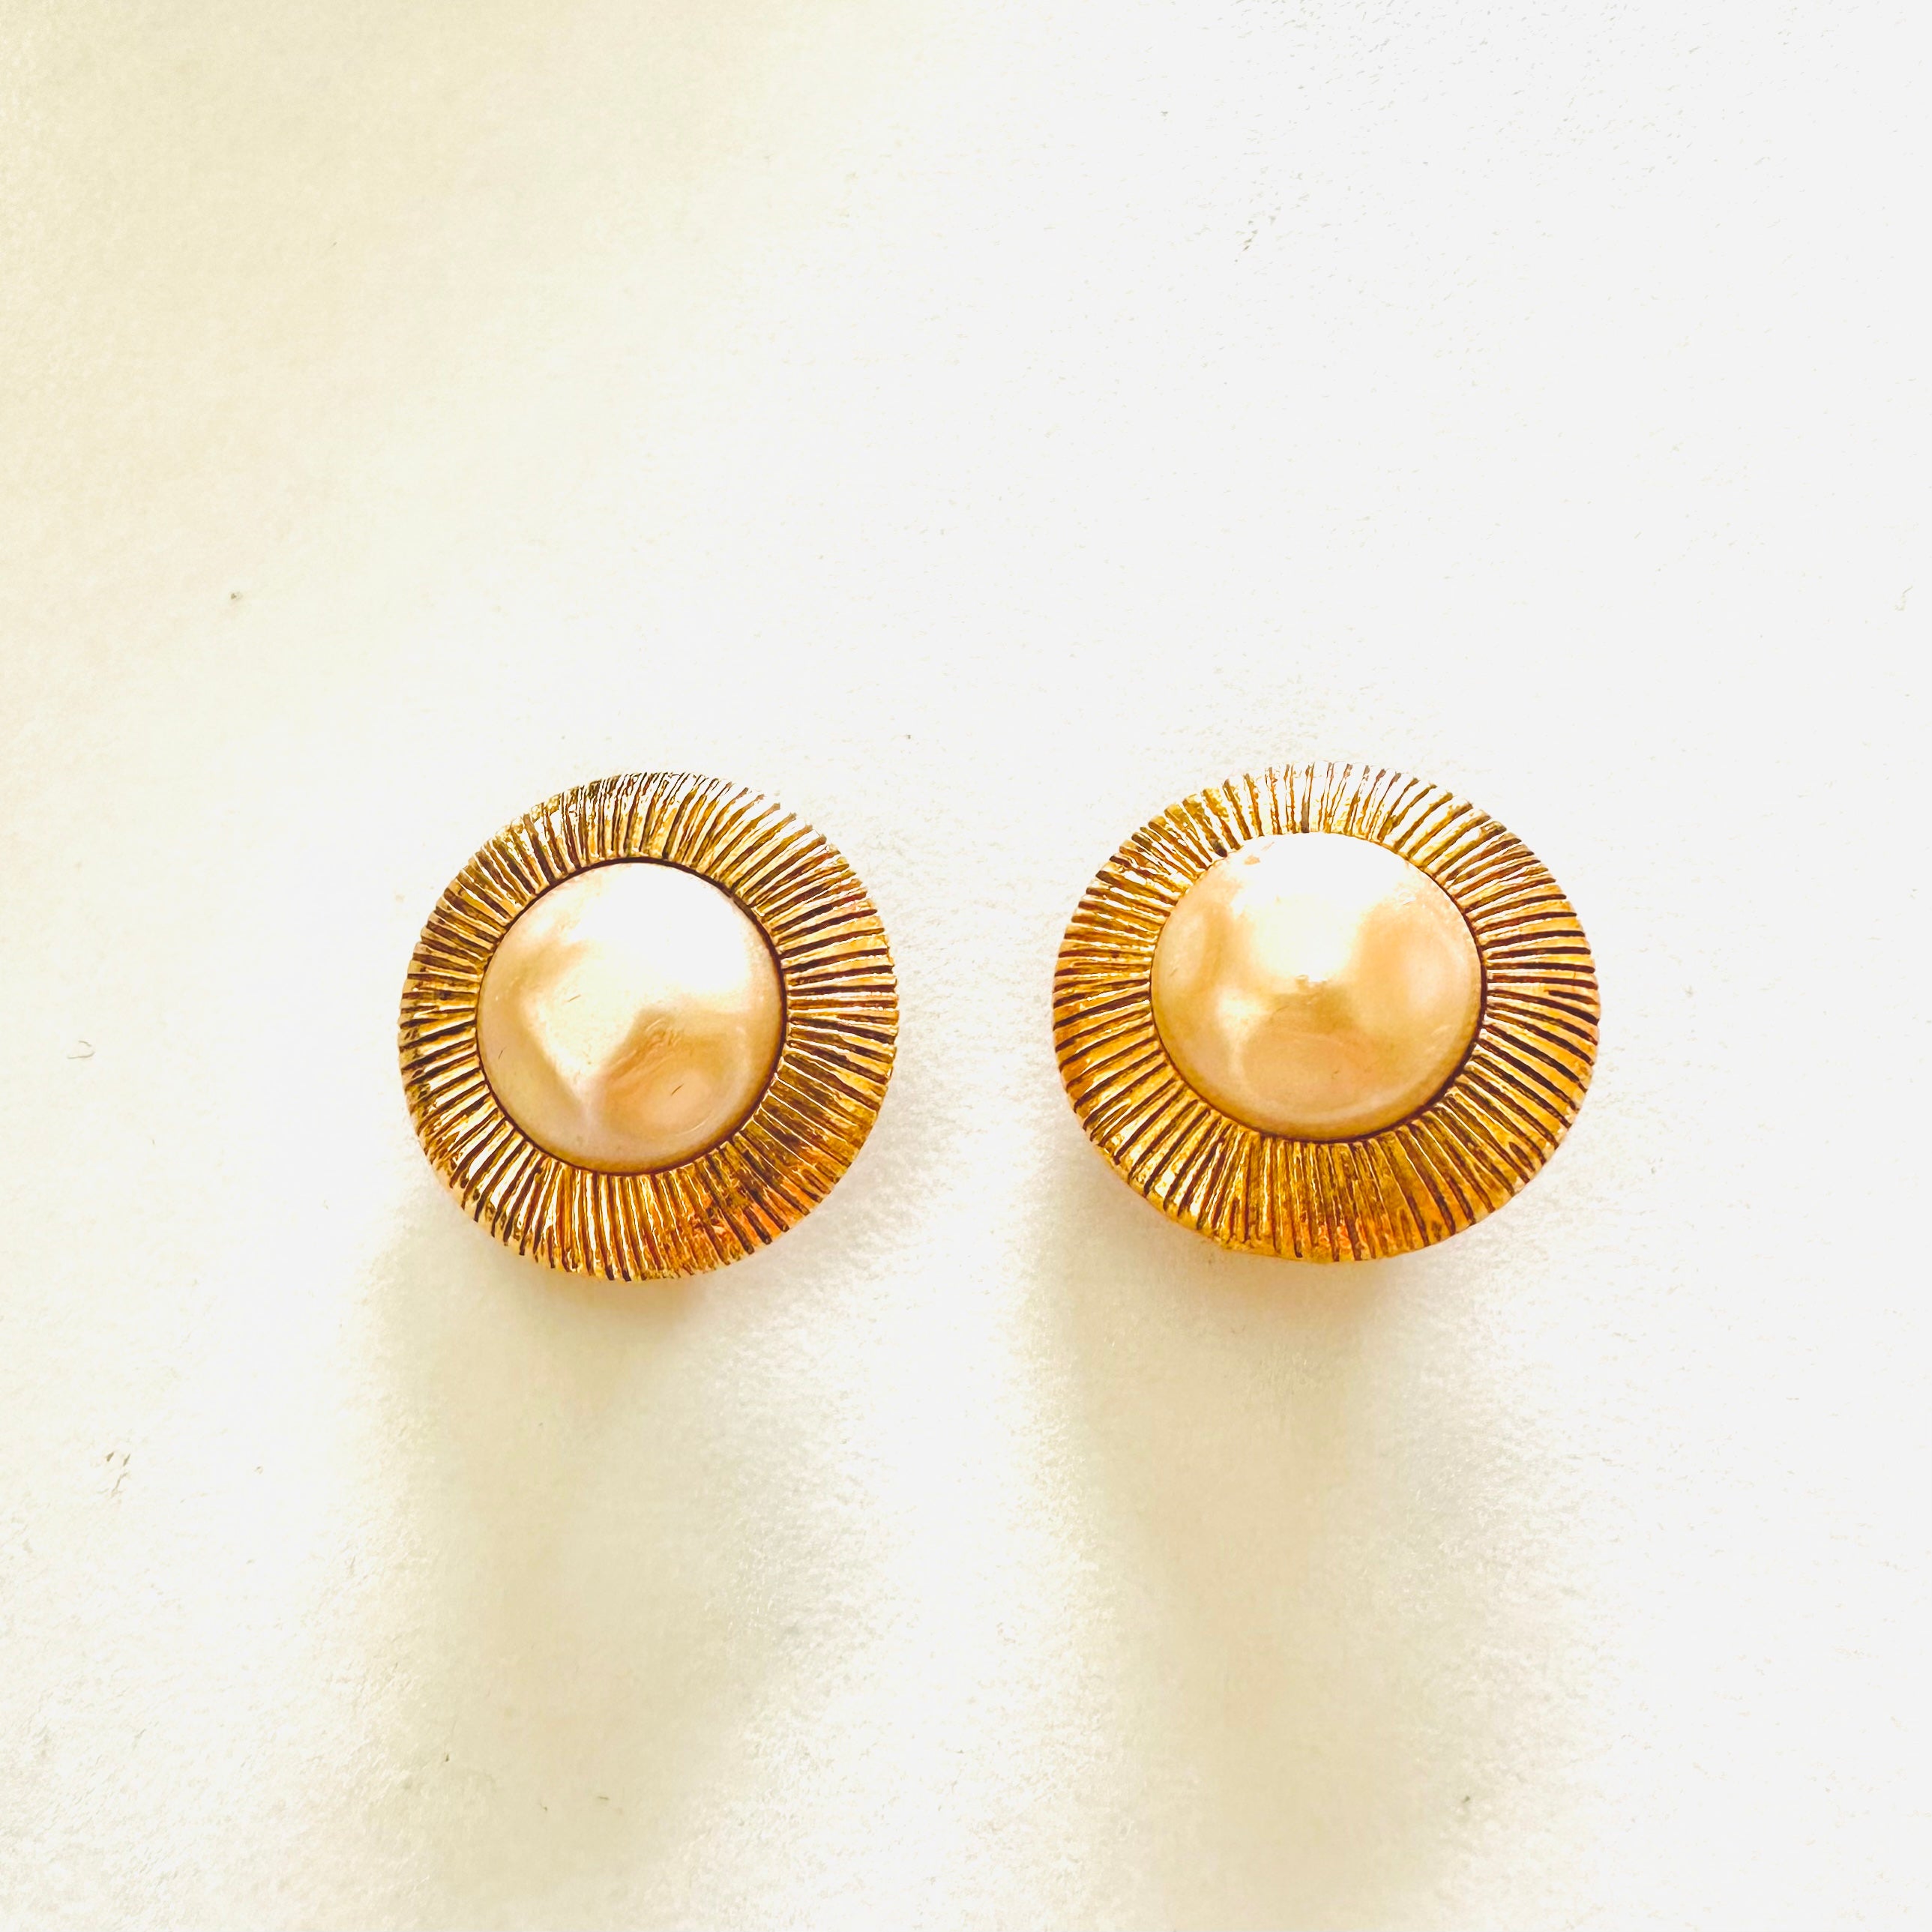 Chanel Piercing Earrings Gold 01p